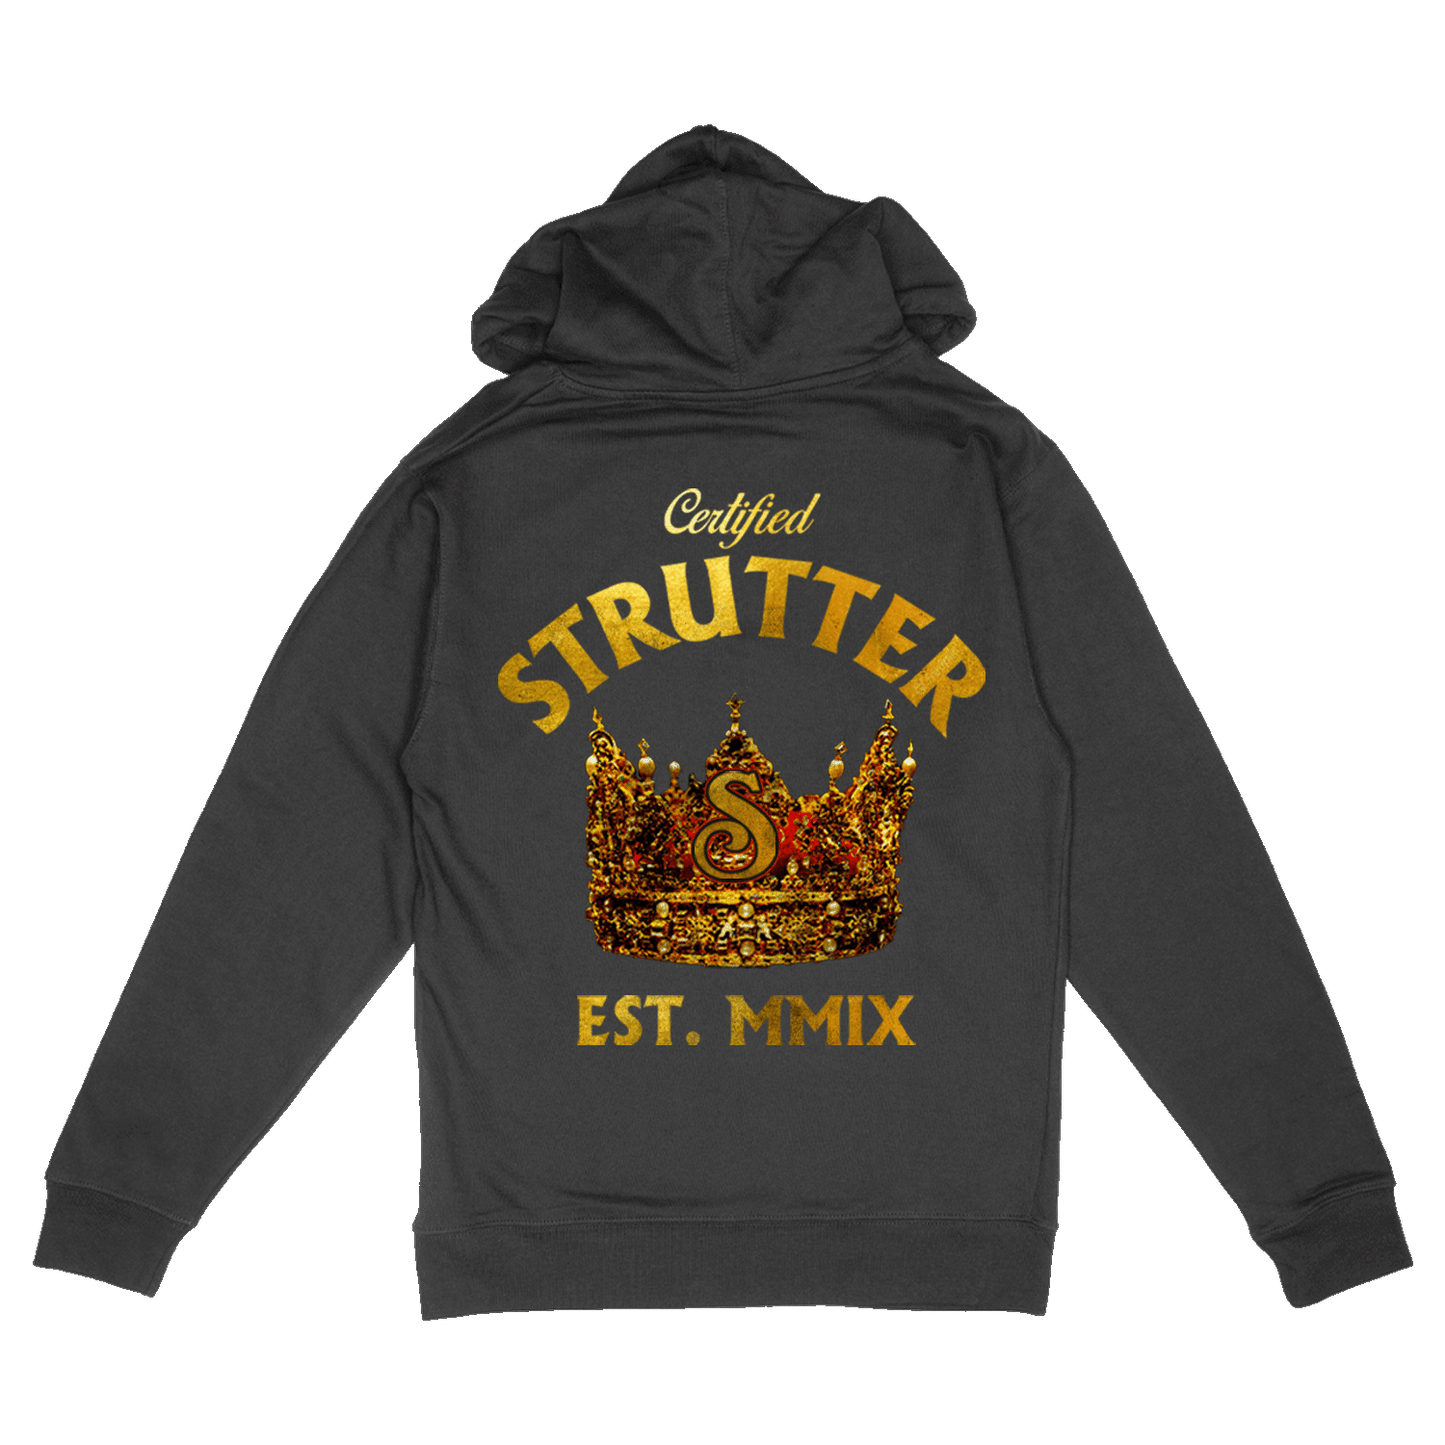 Certified Strutter Hoodie